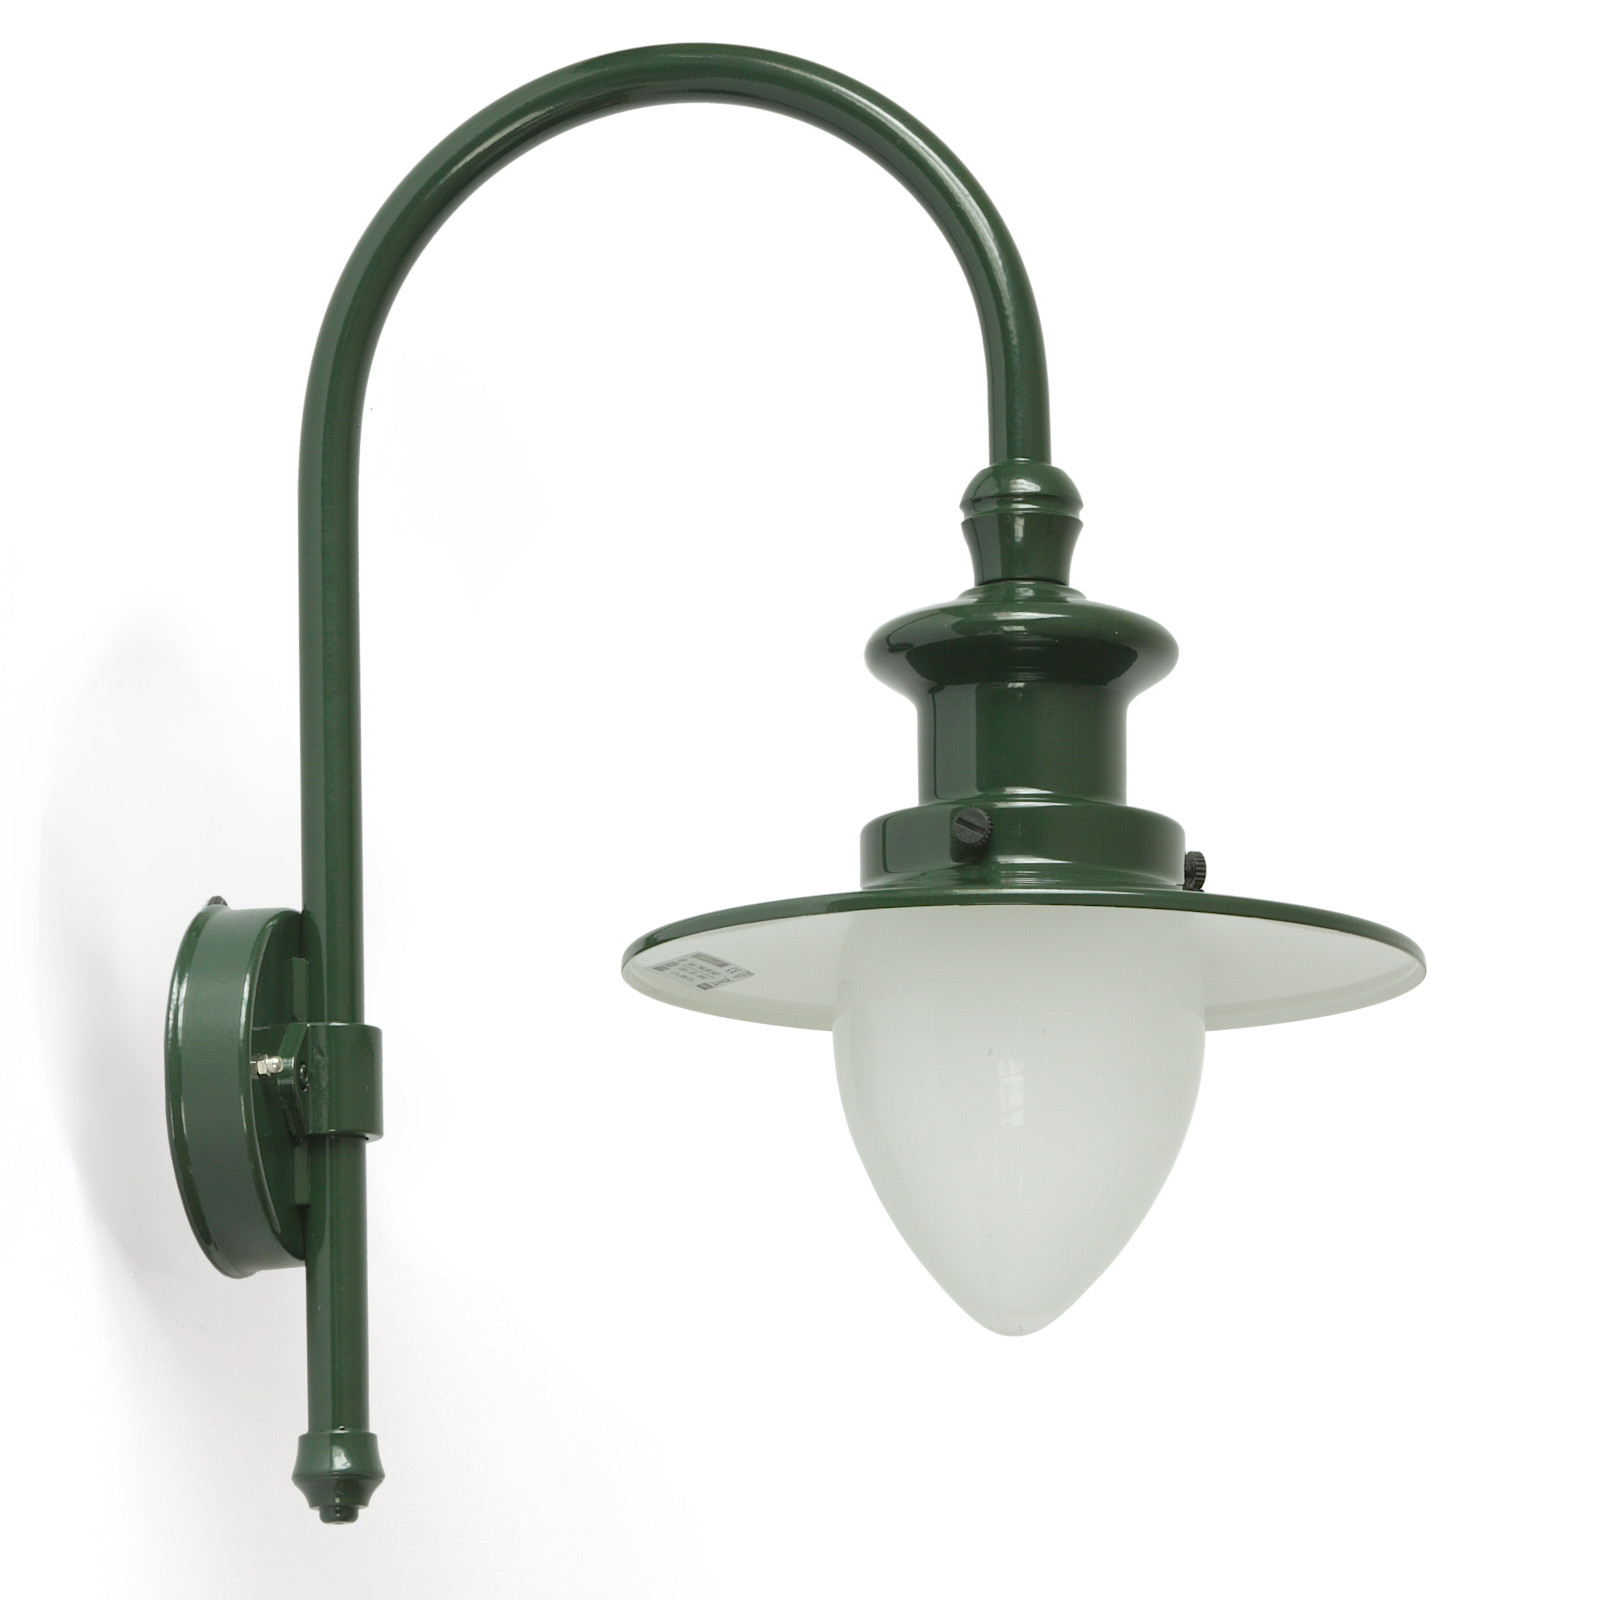 Bow Arm Wall Light for Outdoor Use with Pointed Cylinder: Abgebildet in Tannengrün mit Opalglas: Bogenarm-Wandlampe für außen mit Spitzzylinder 